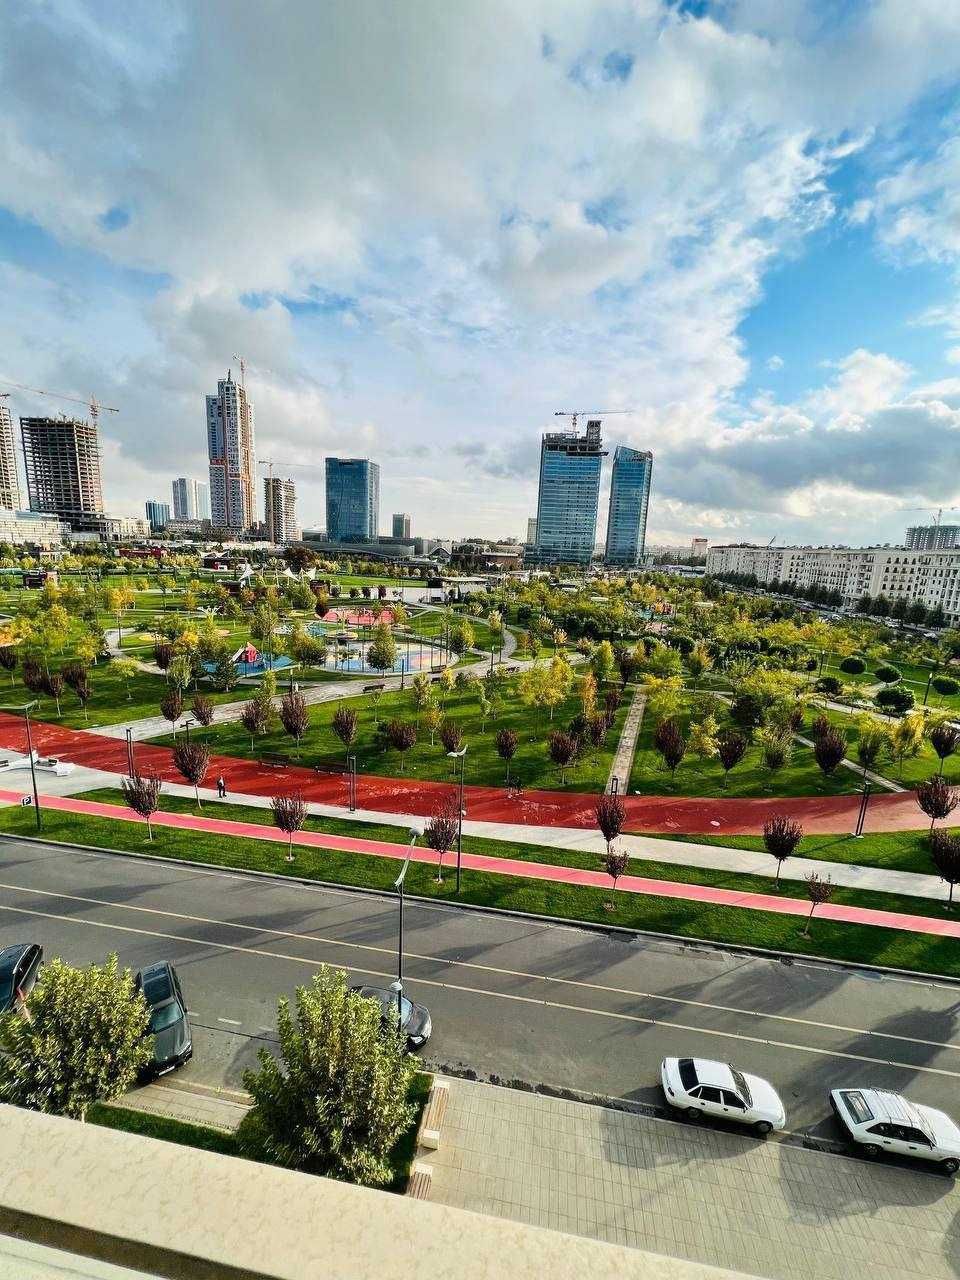 Сдается люкс апартамент в Ташкент Сити! 2х ком.